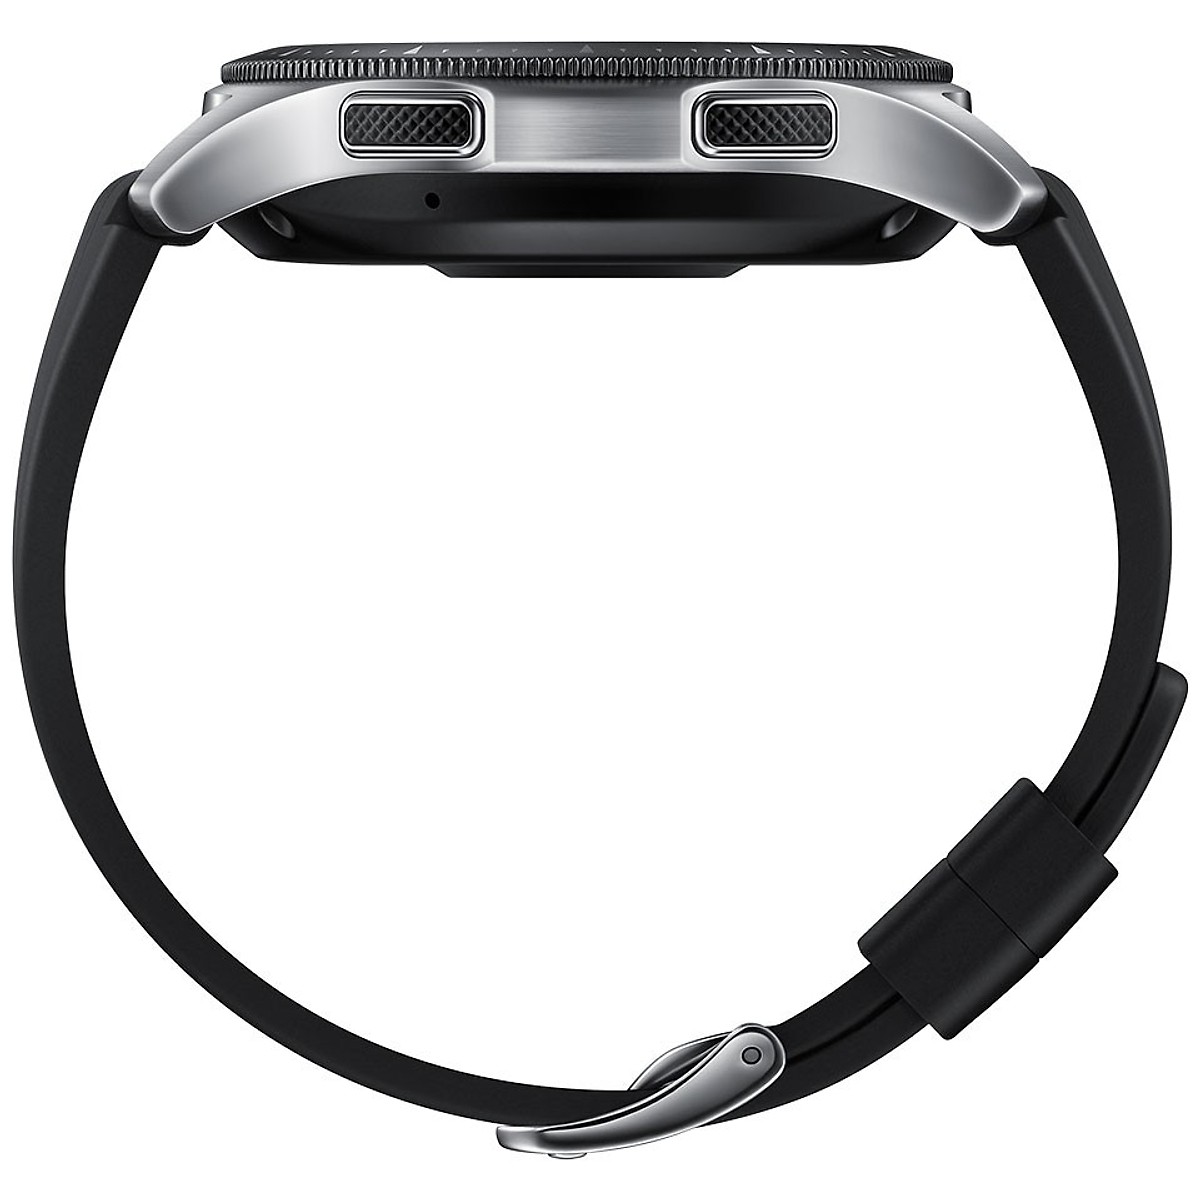 Đồng hồ thông minh Samsung Galaxy Watch 46mm Sliver Bluetooth - Hàng nhập khẩu